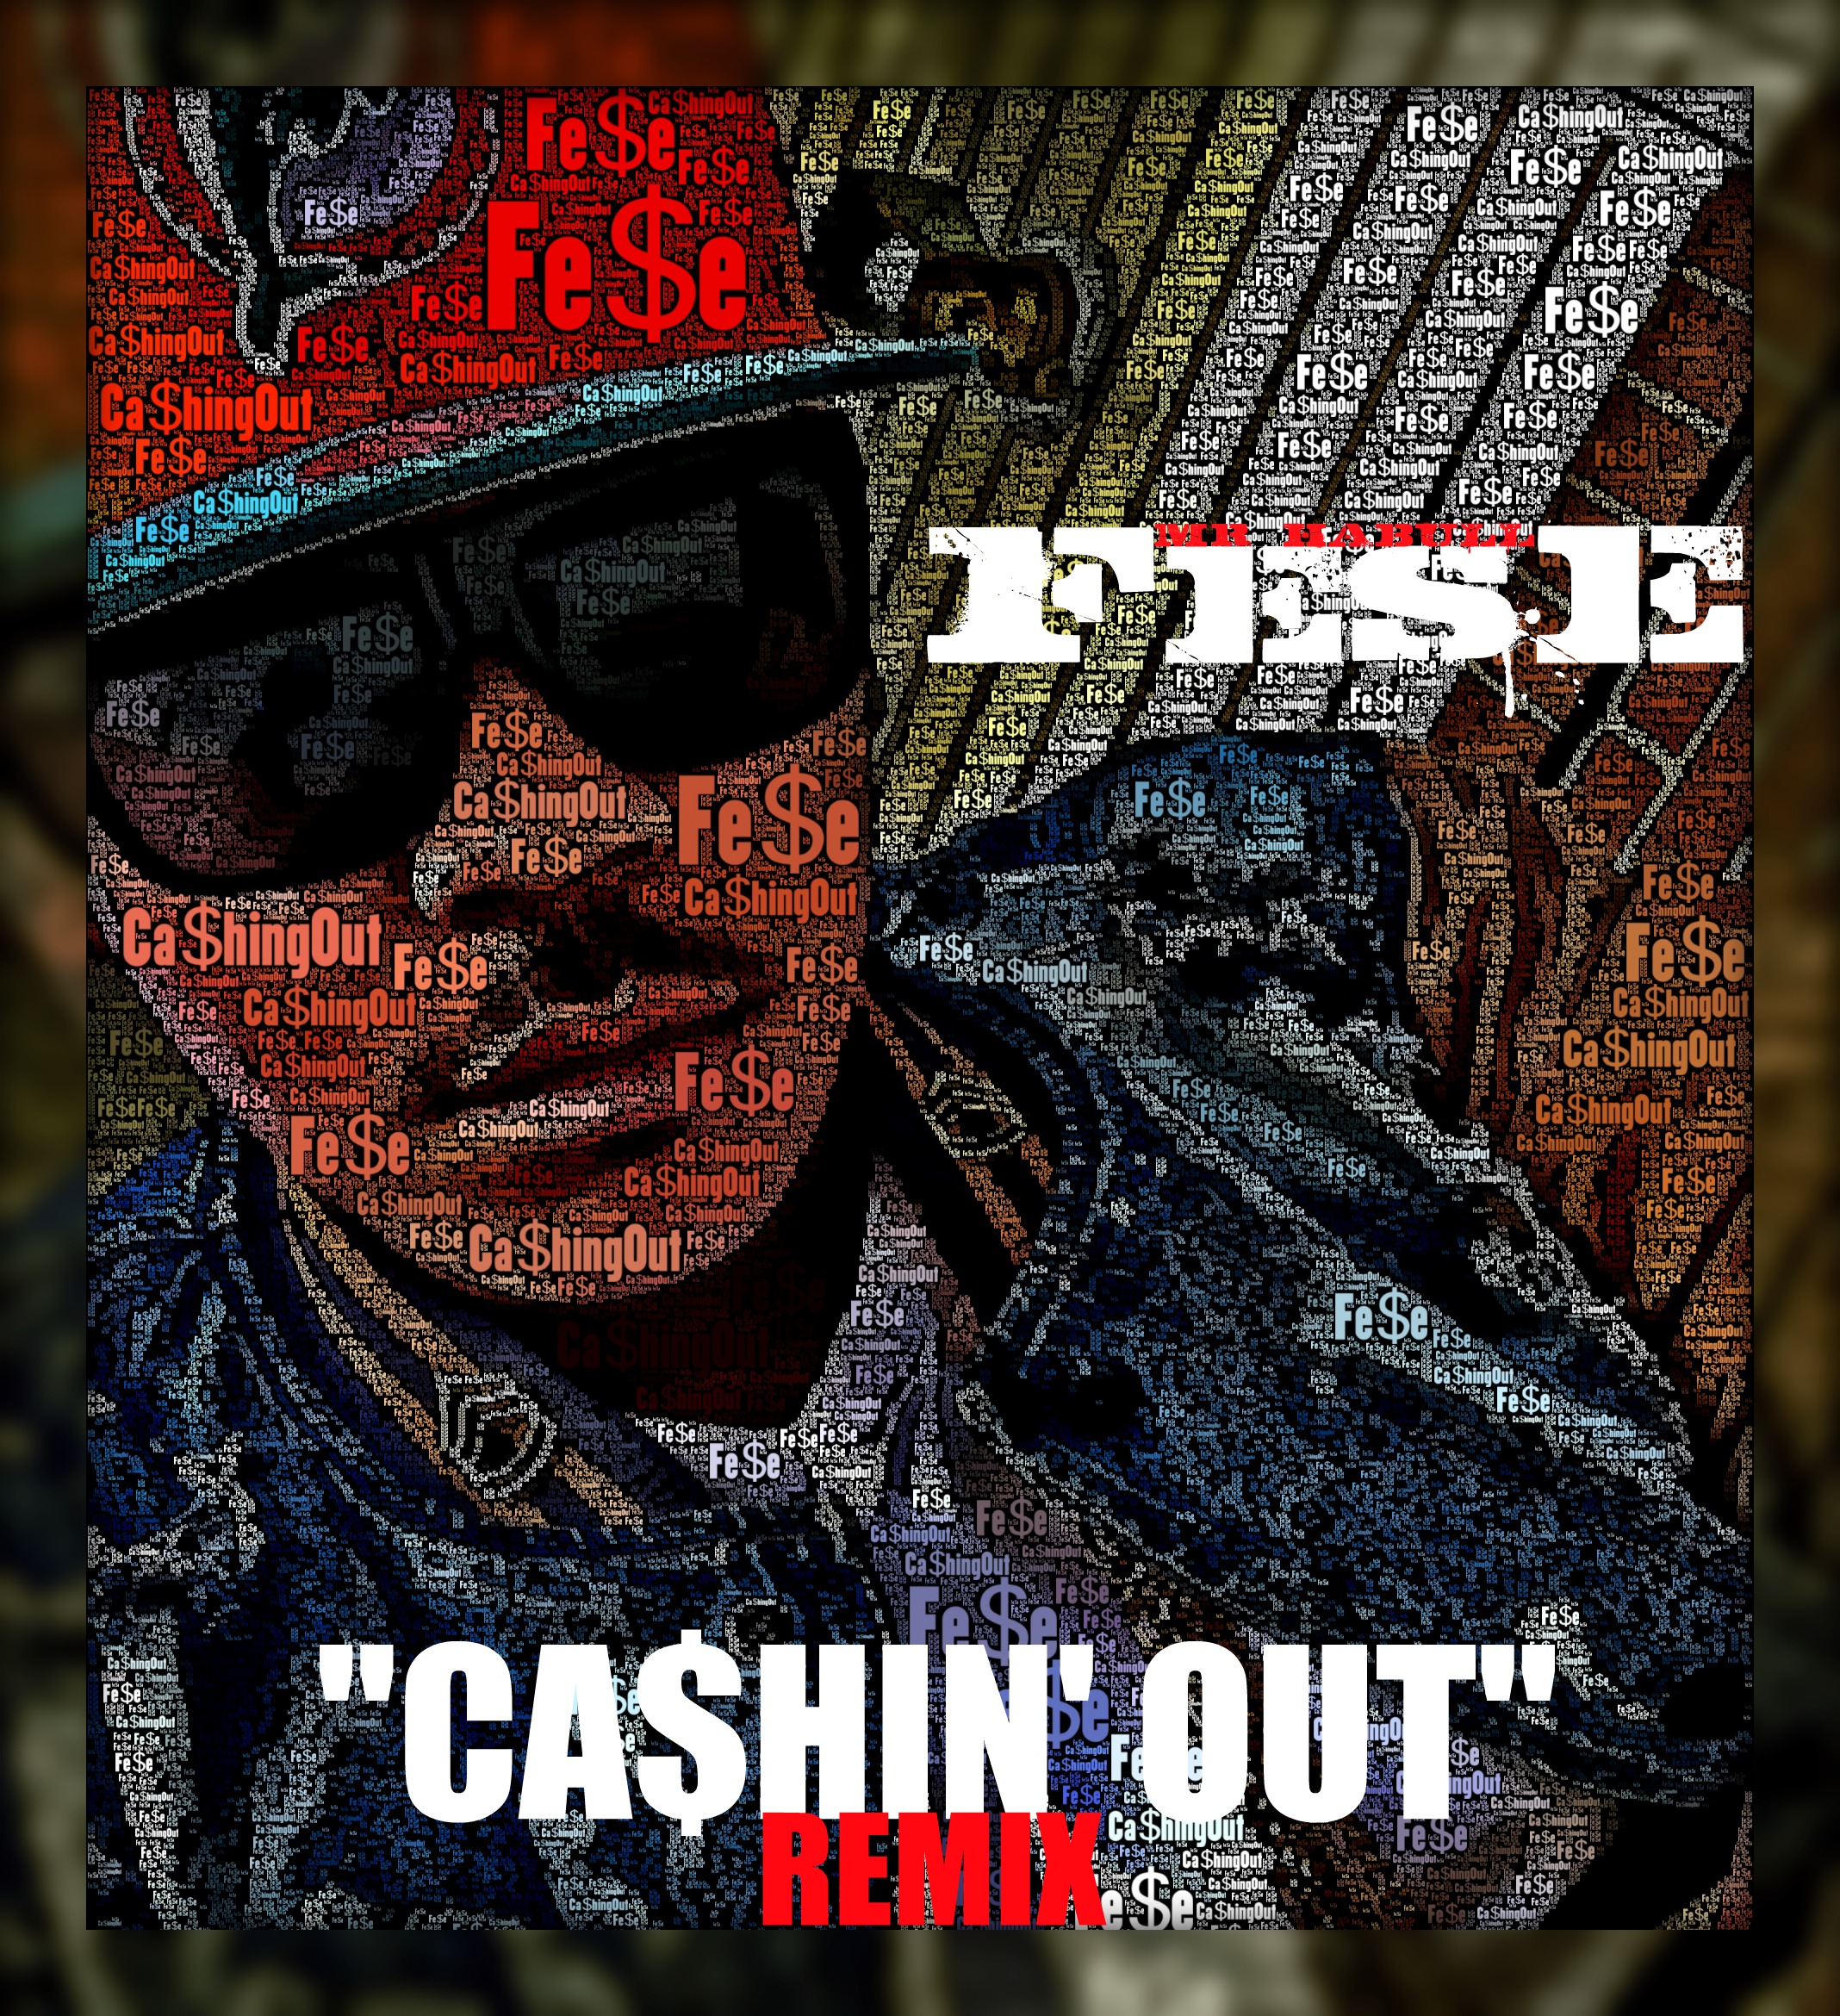 cashing-out Fese (@MrHabull) - Cashin Out (Remix) 